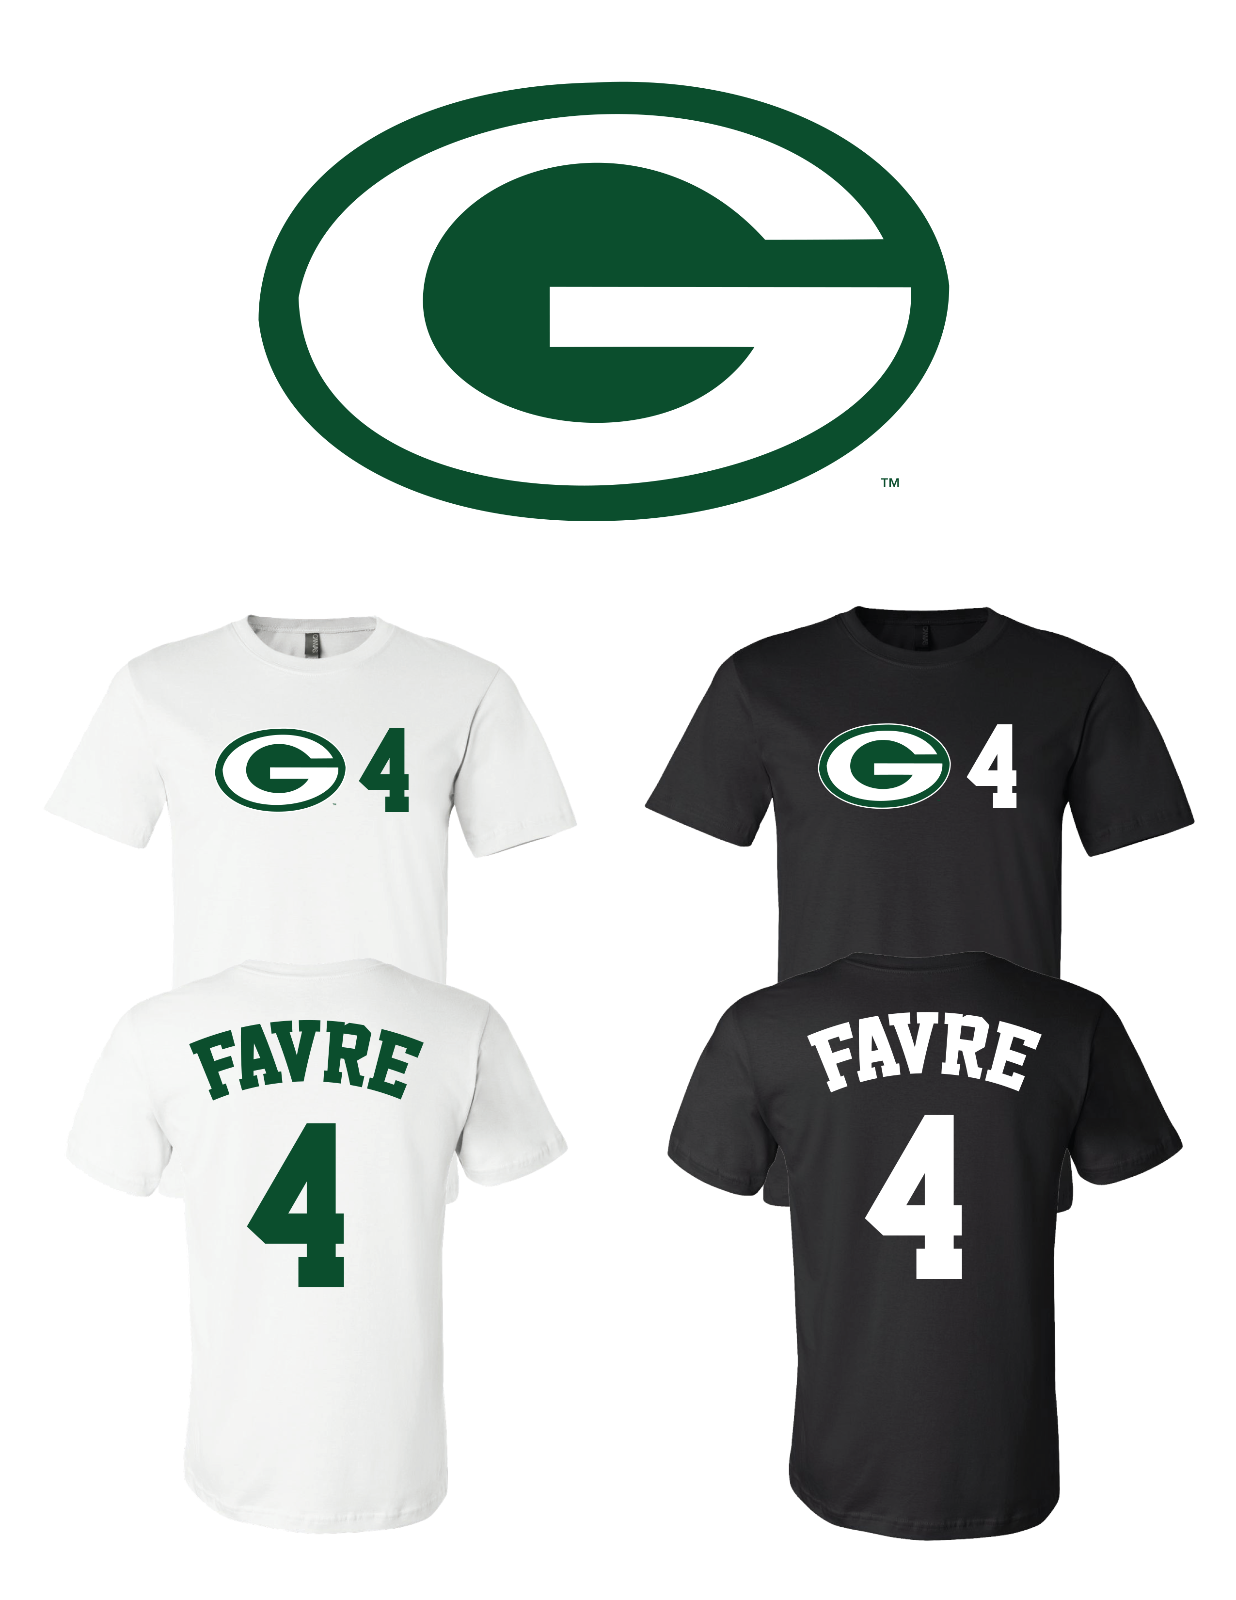 Brett Favre #4 Green Bay Packers Jersey player shirt